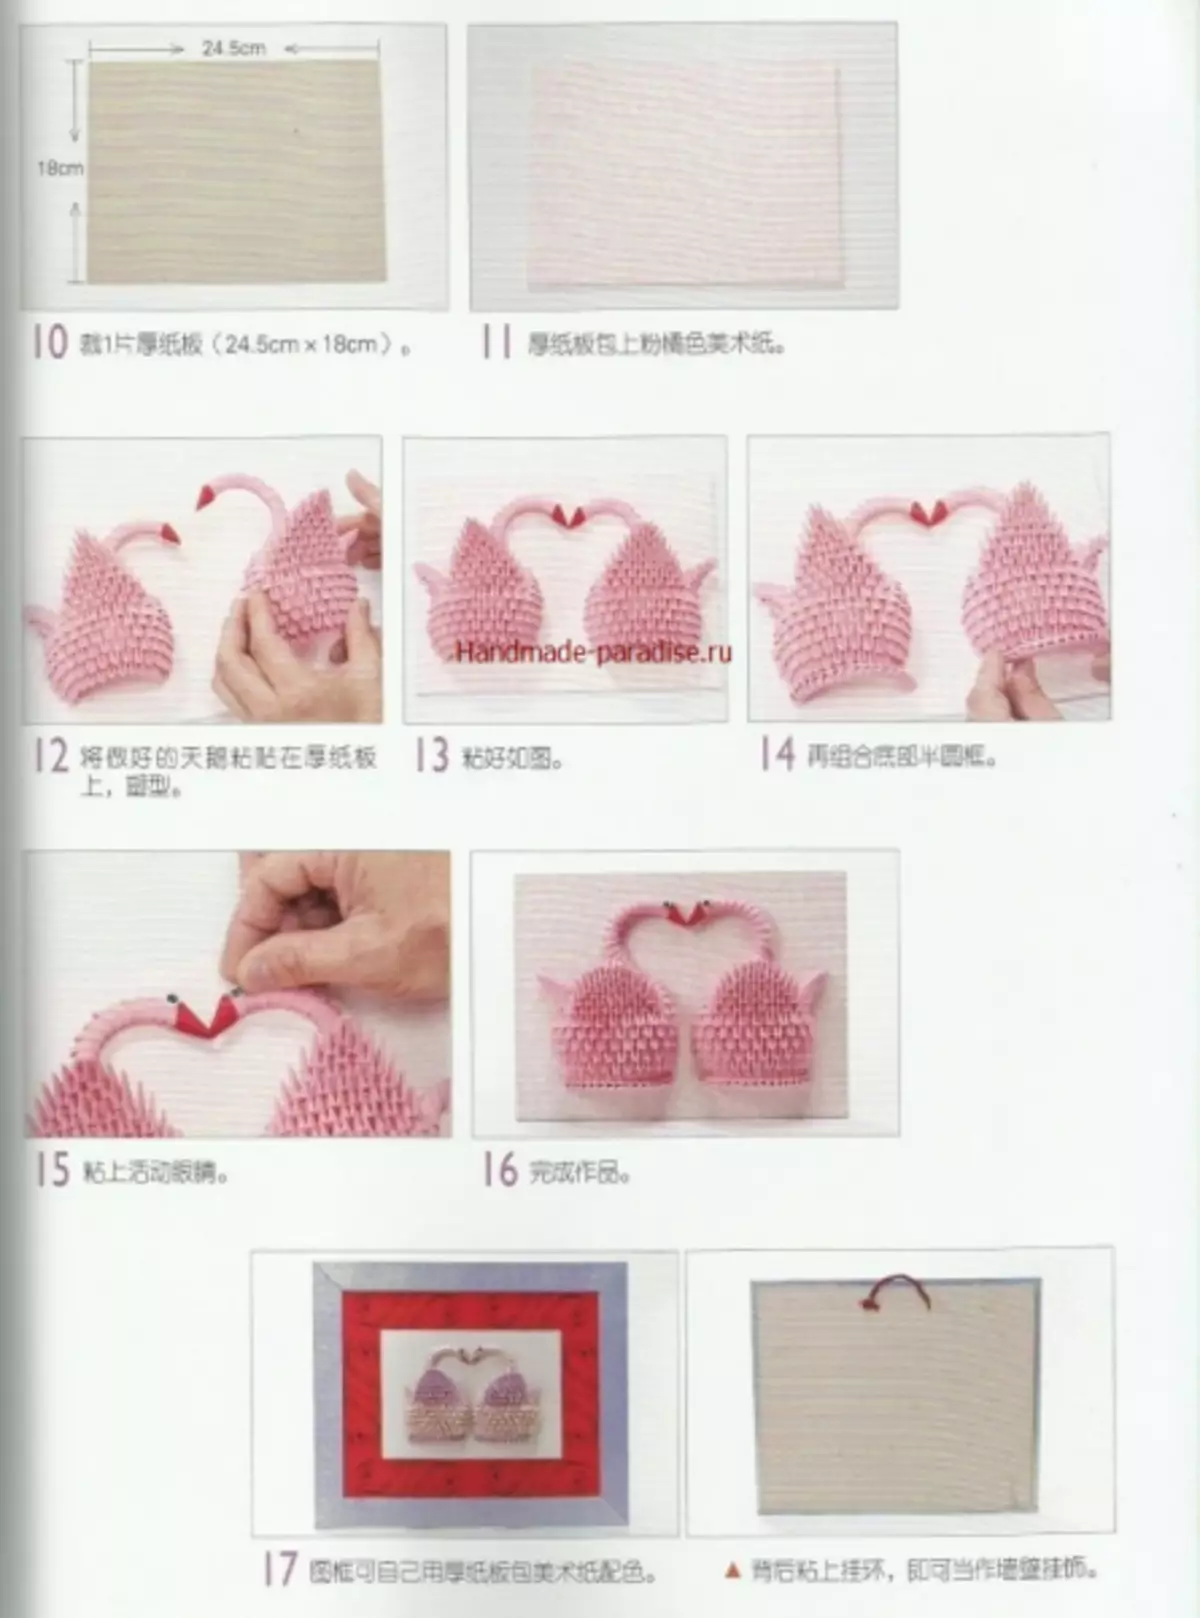 Modular Origami. Kovara Japonî bi çînên masterê